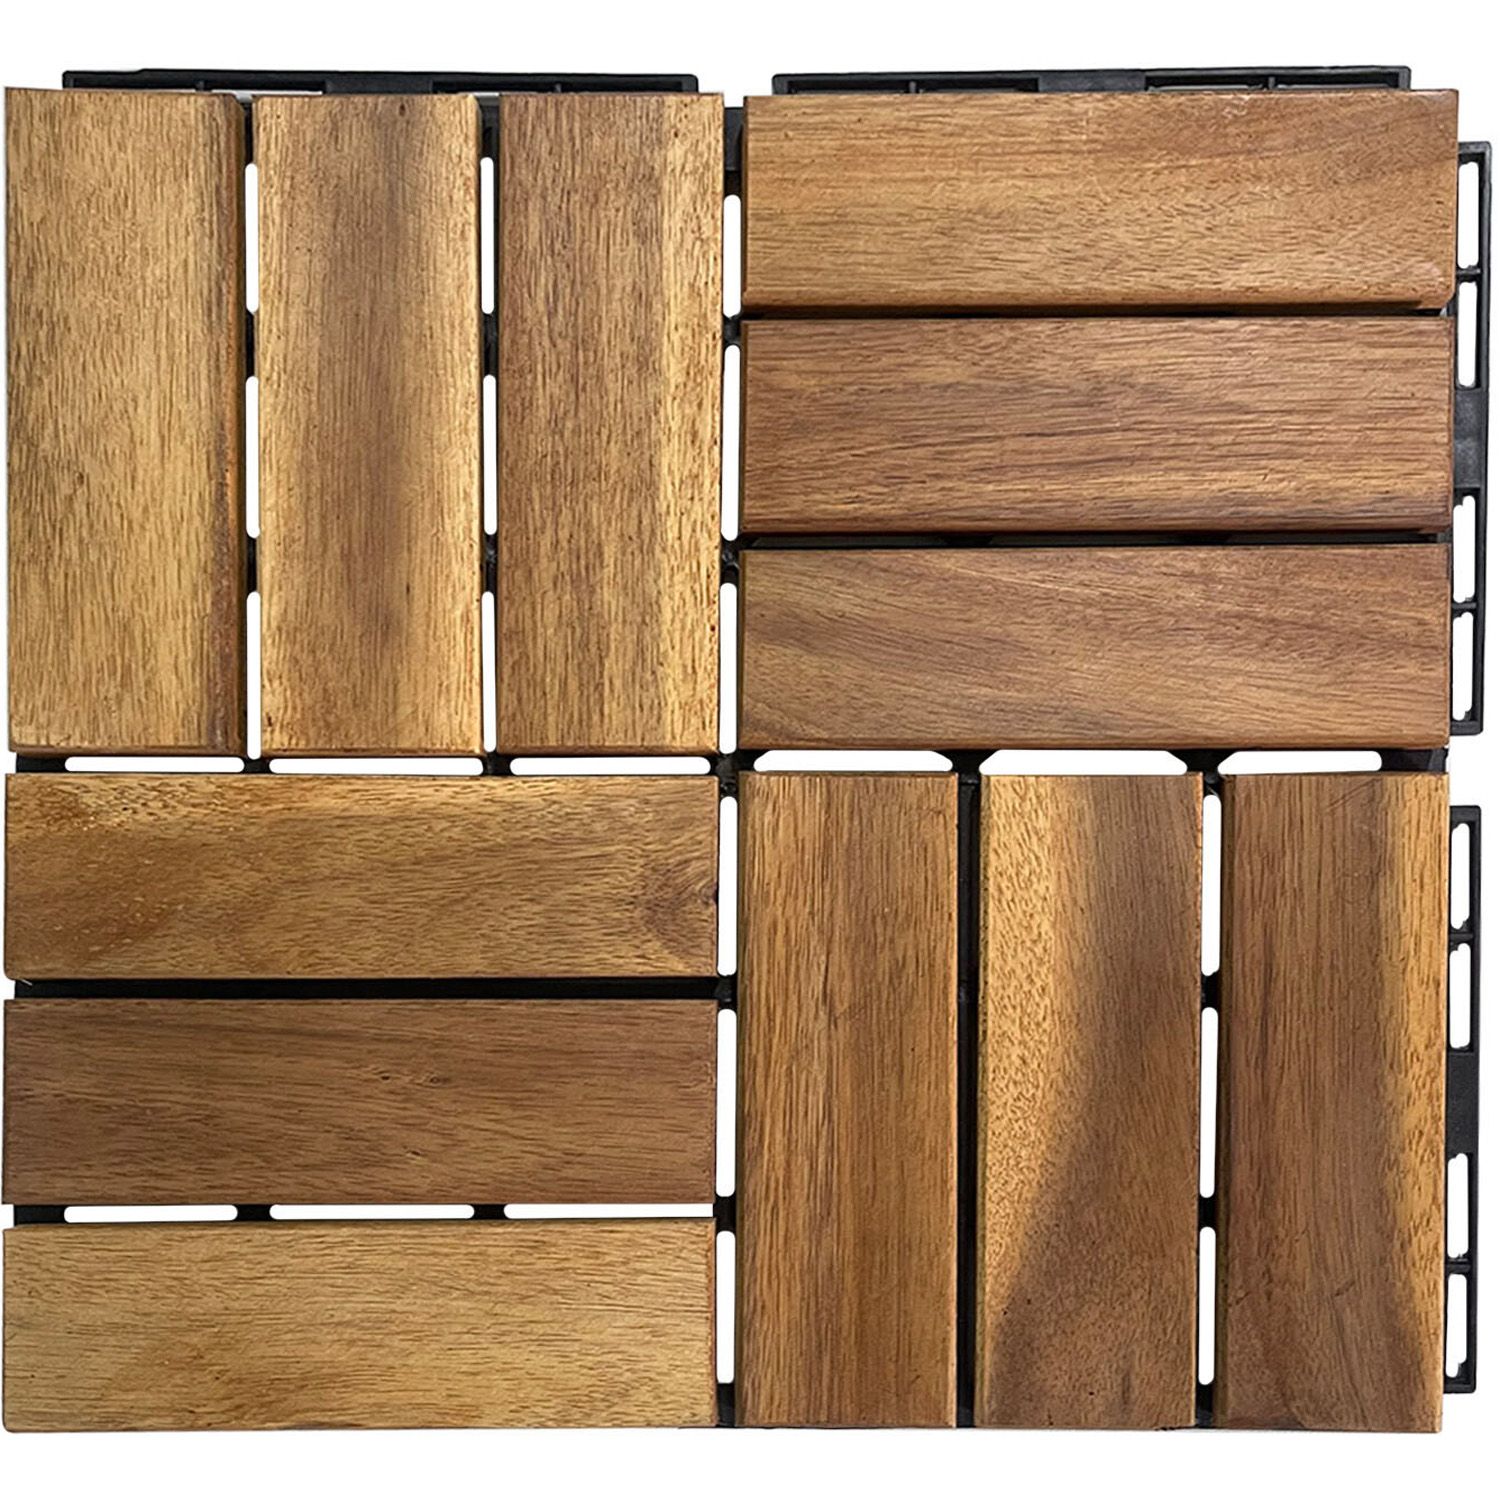 Acacia Decking Tiles - Brown Image